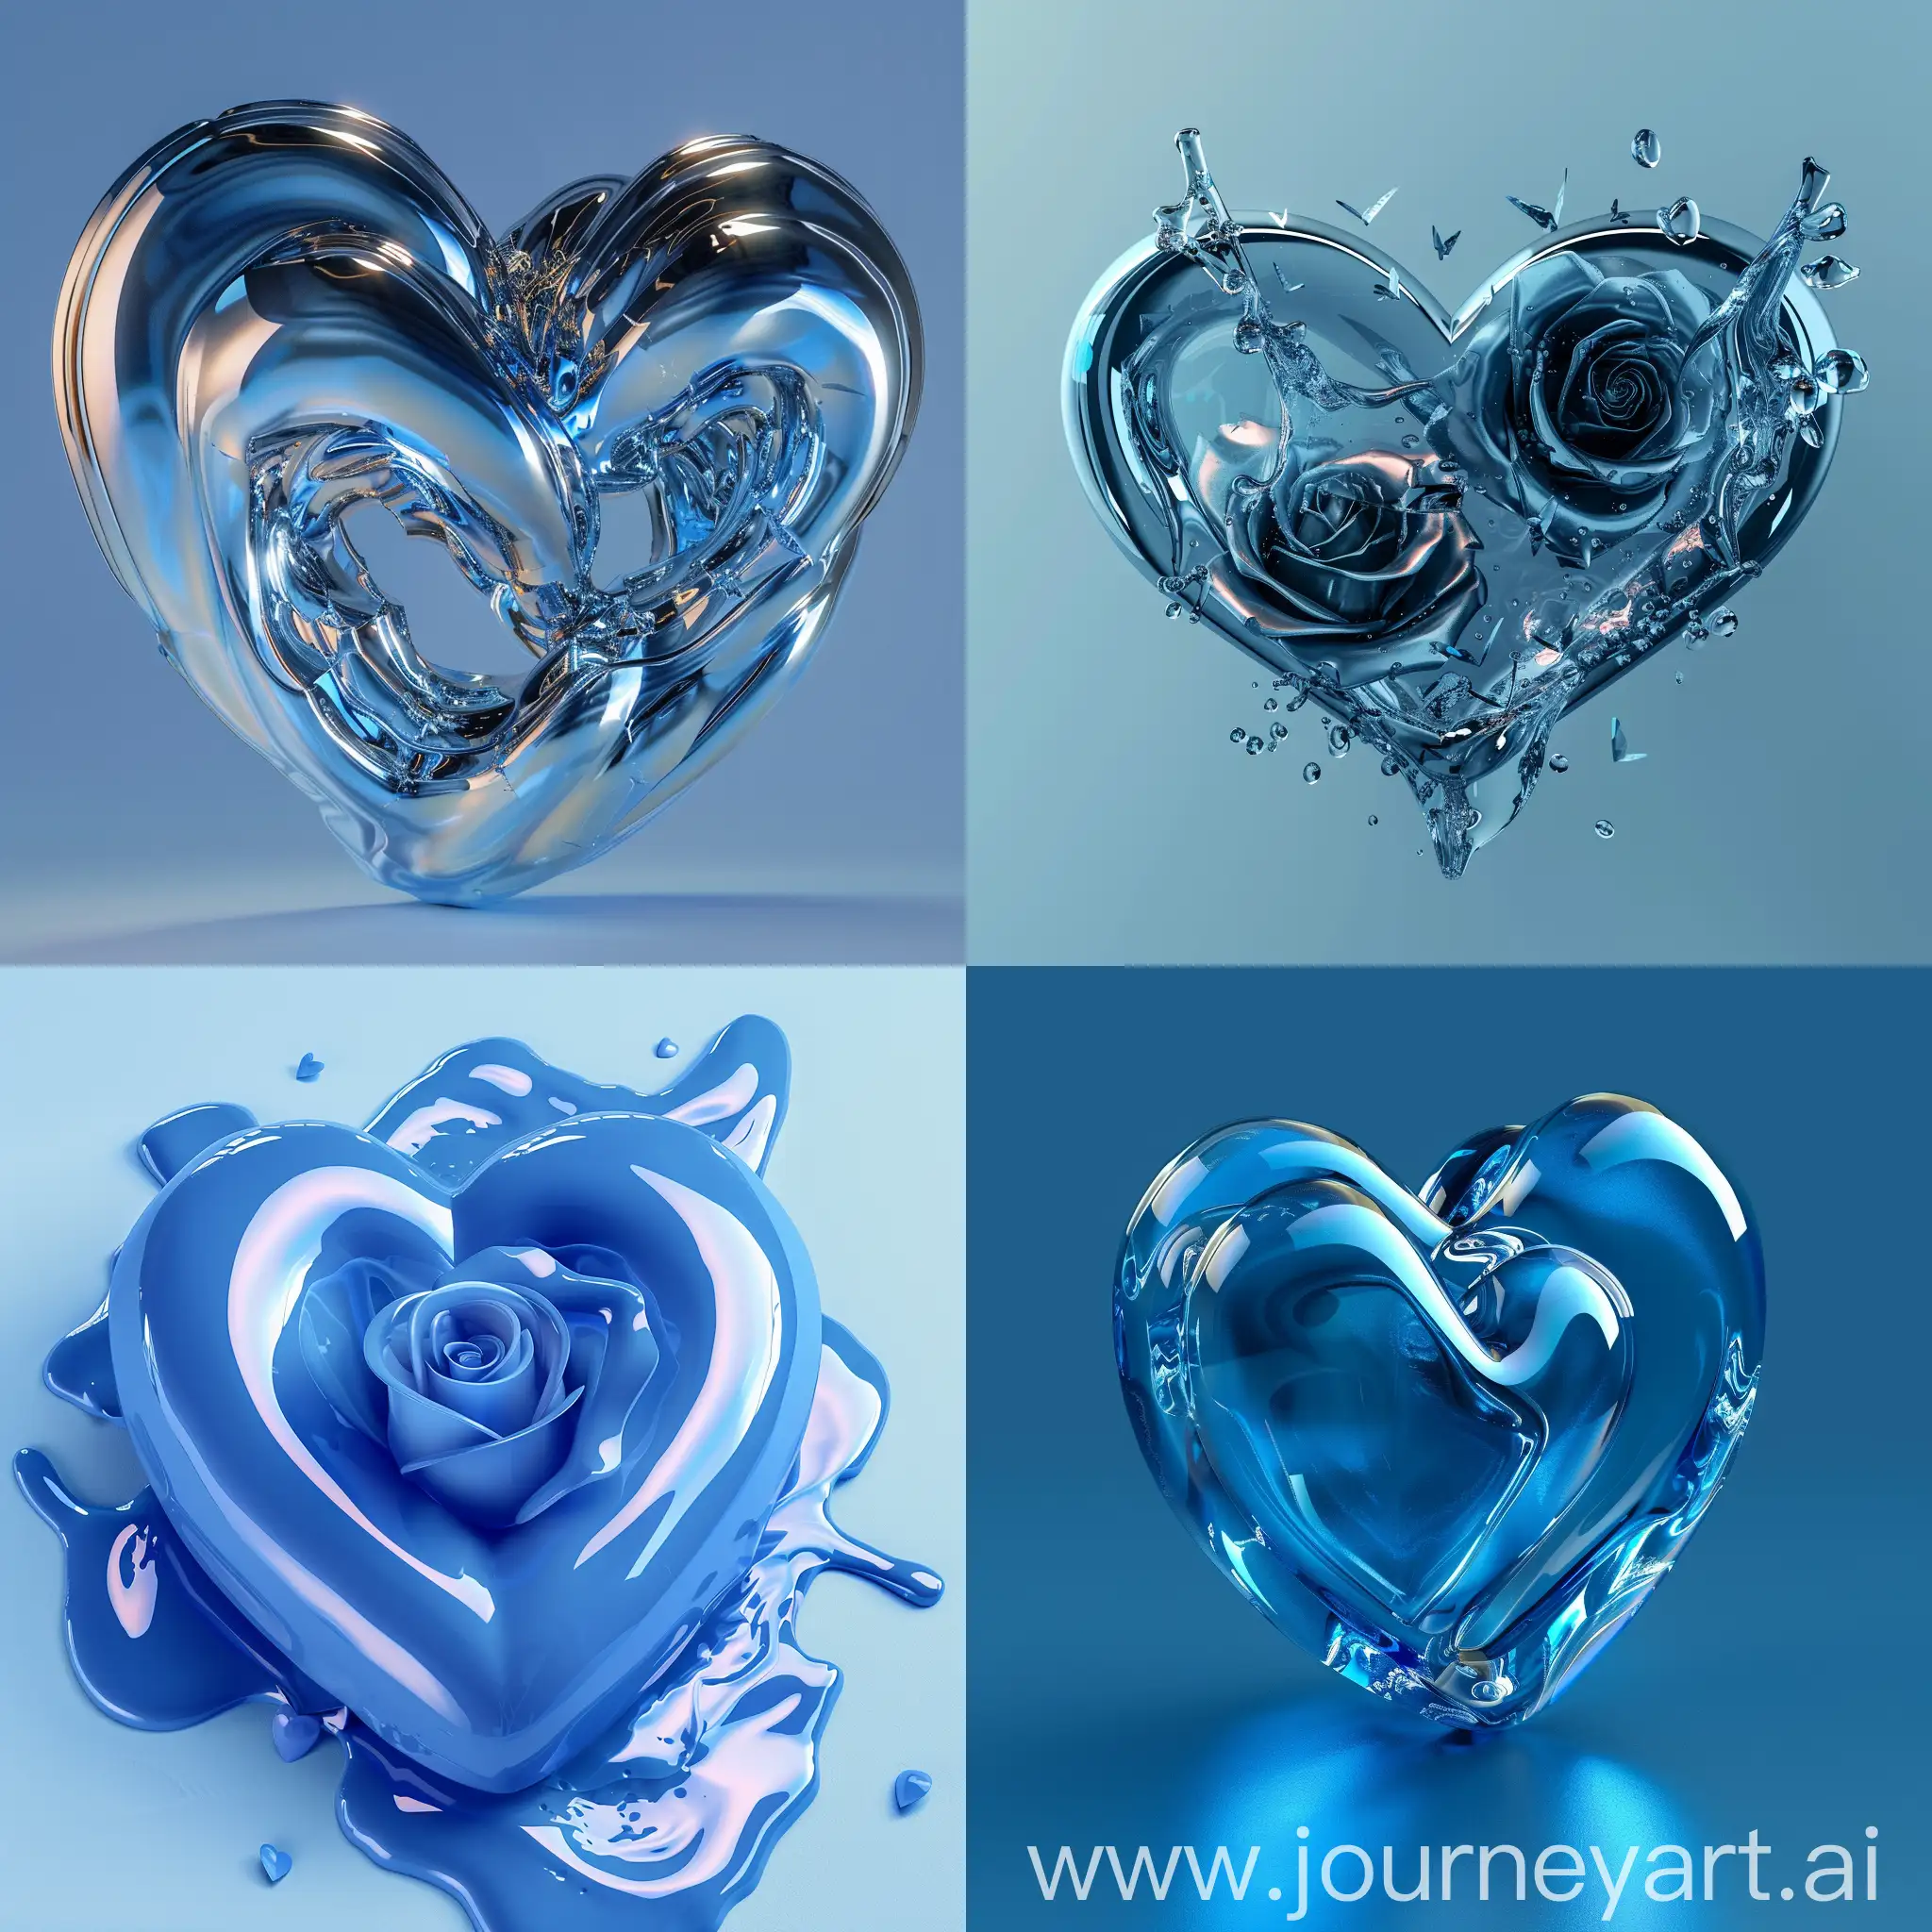 Romantic-3D-Album-Cover-with-Blue-Theme